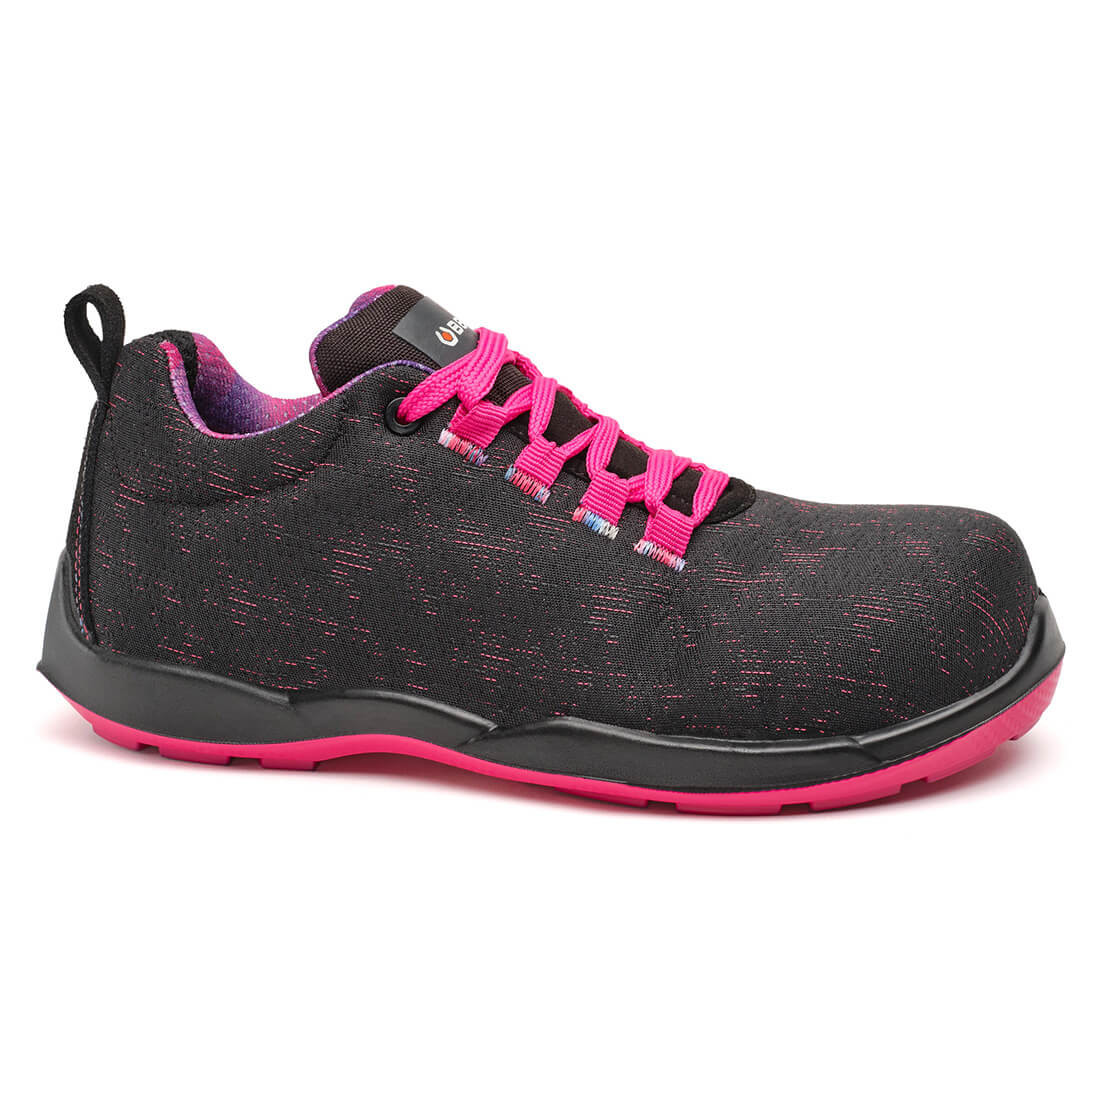 Pantofi dama VIOLET S3 SRC - Incaltaminte de protectie | Bocanci, Pantofi, Sandale, Cizme